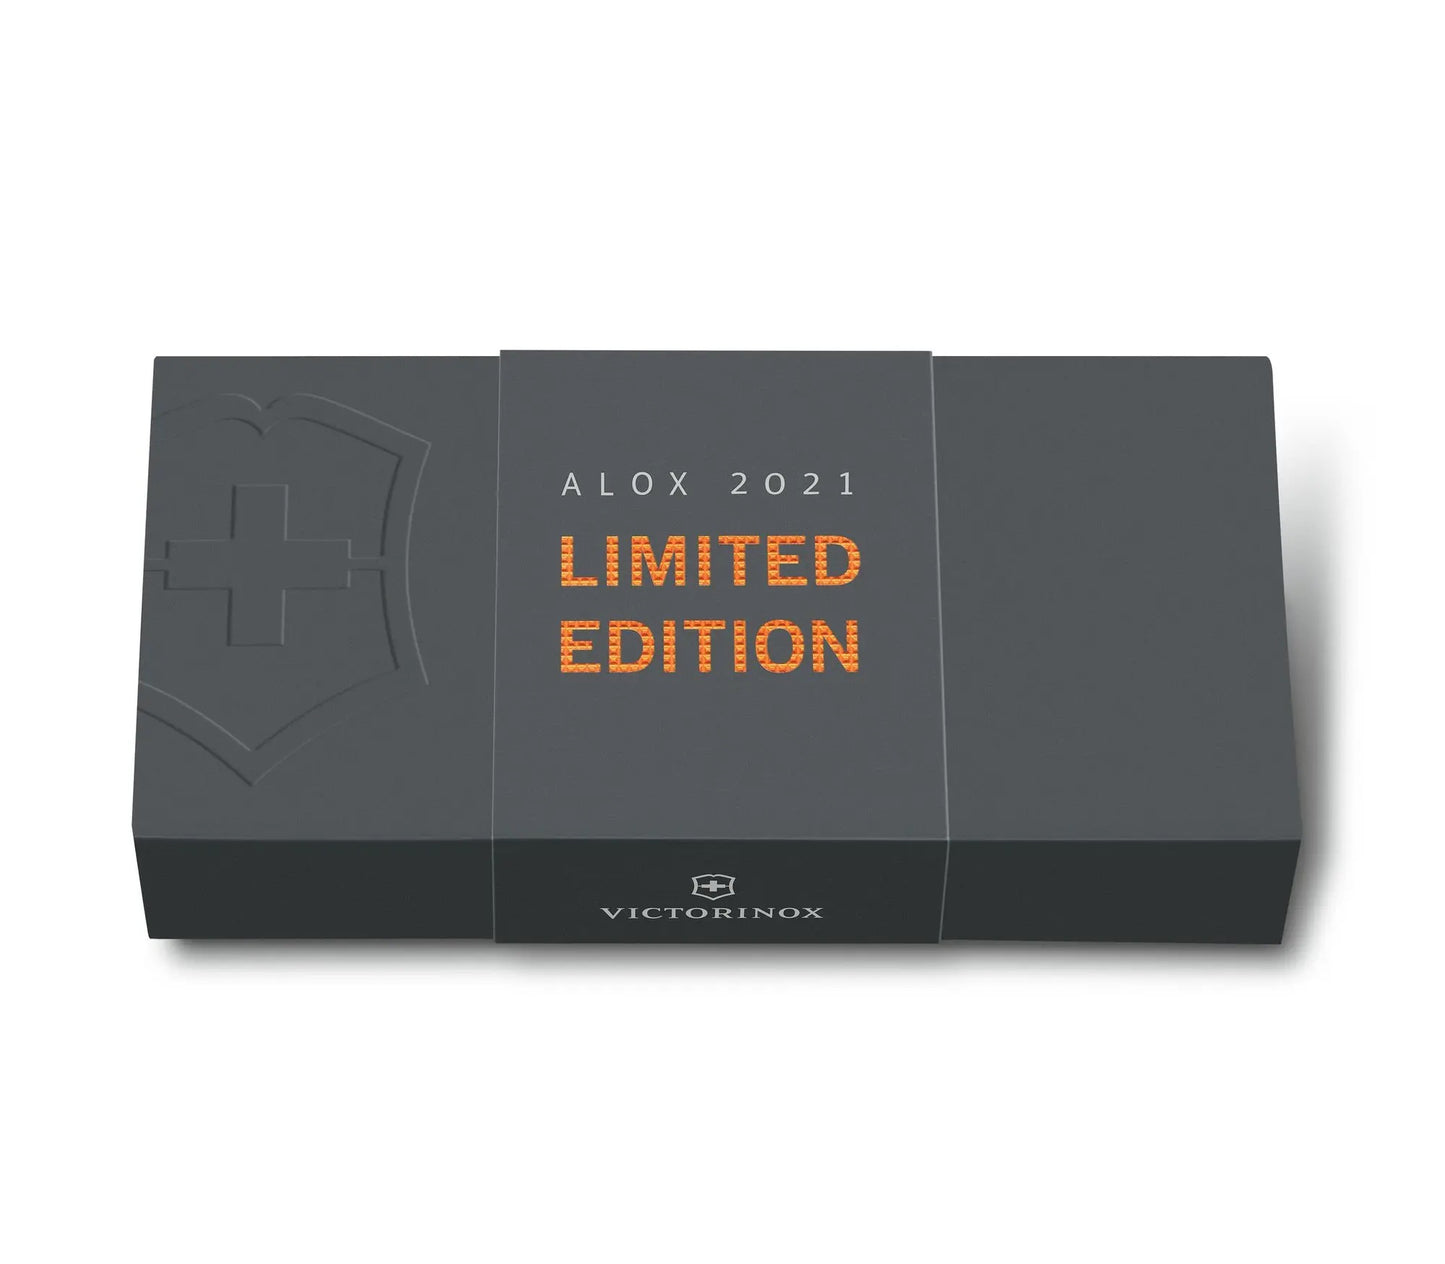 Victorinox coltello multiuso Pioneer Alox edizione limitata 2021